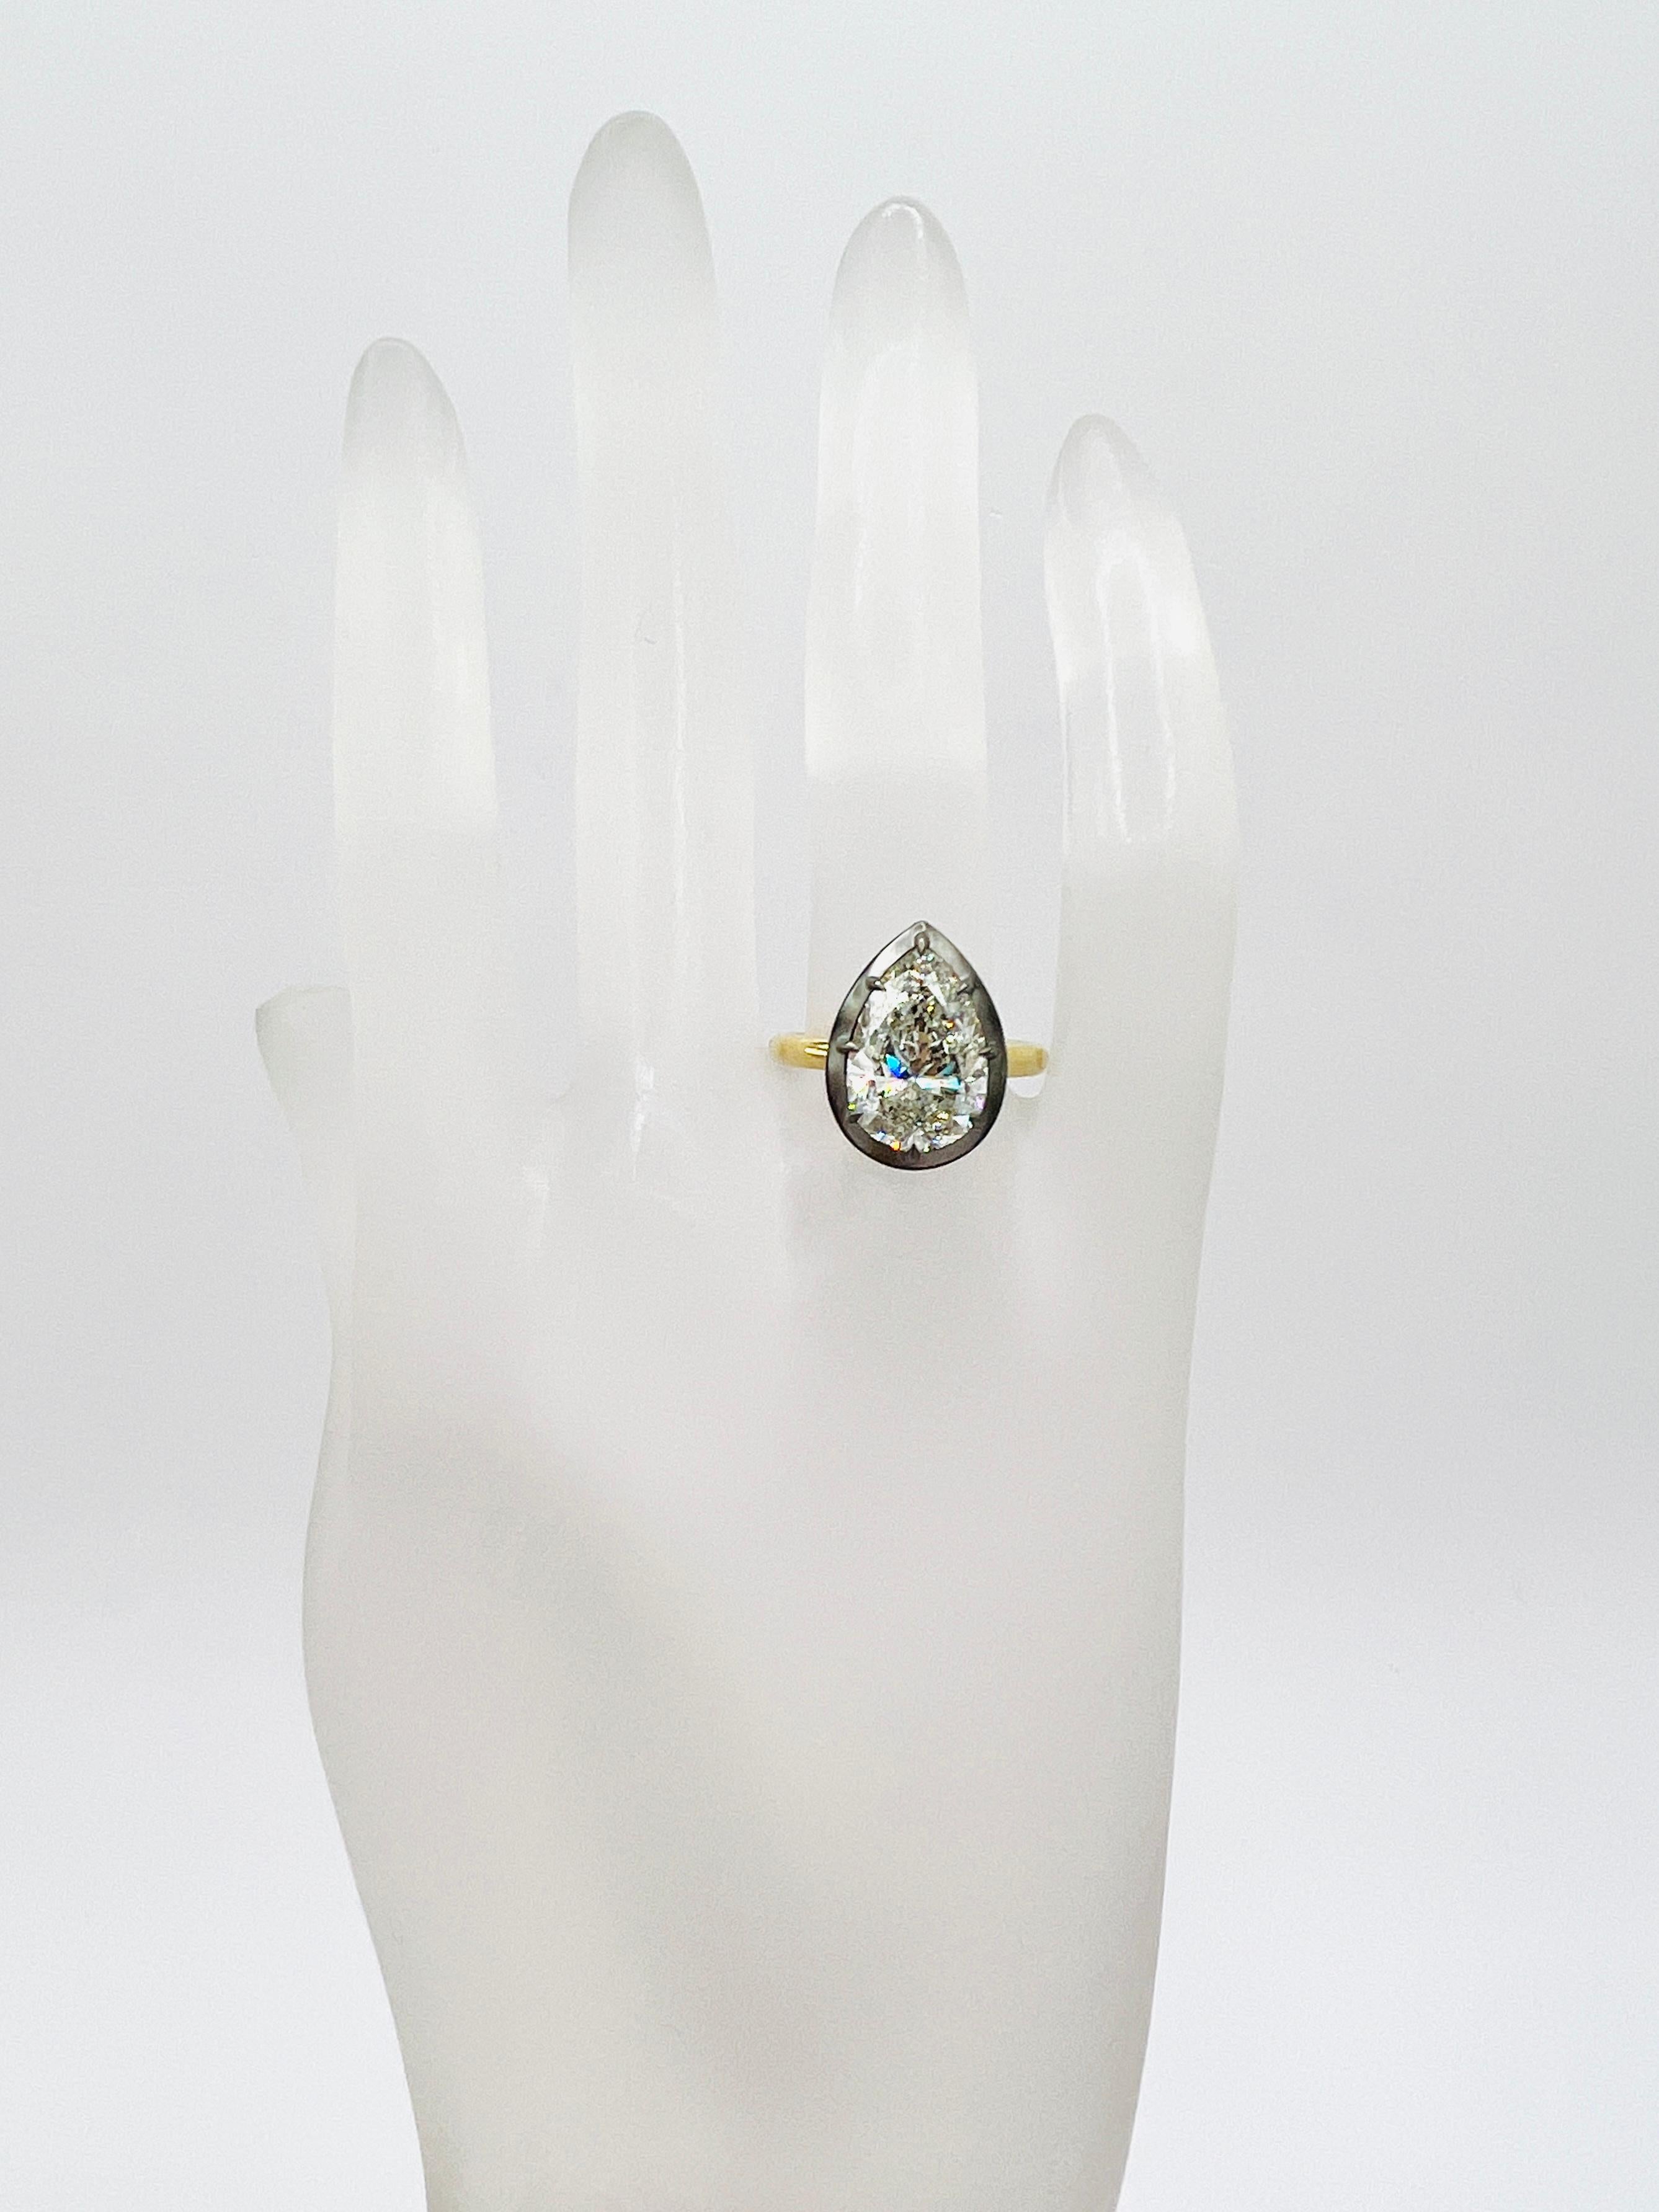 Magnifique 5.00 ct. J SI2 diamant blanc en forme de poire fait à la main en or jaune 18k et rhodium noir.  Taille de la bague 65.  Certificat GIA inclus.